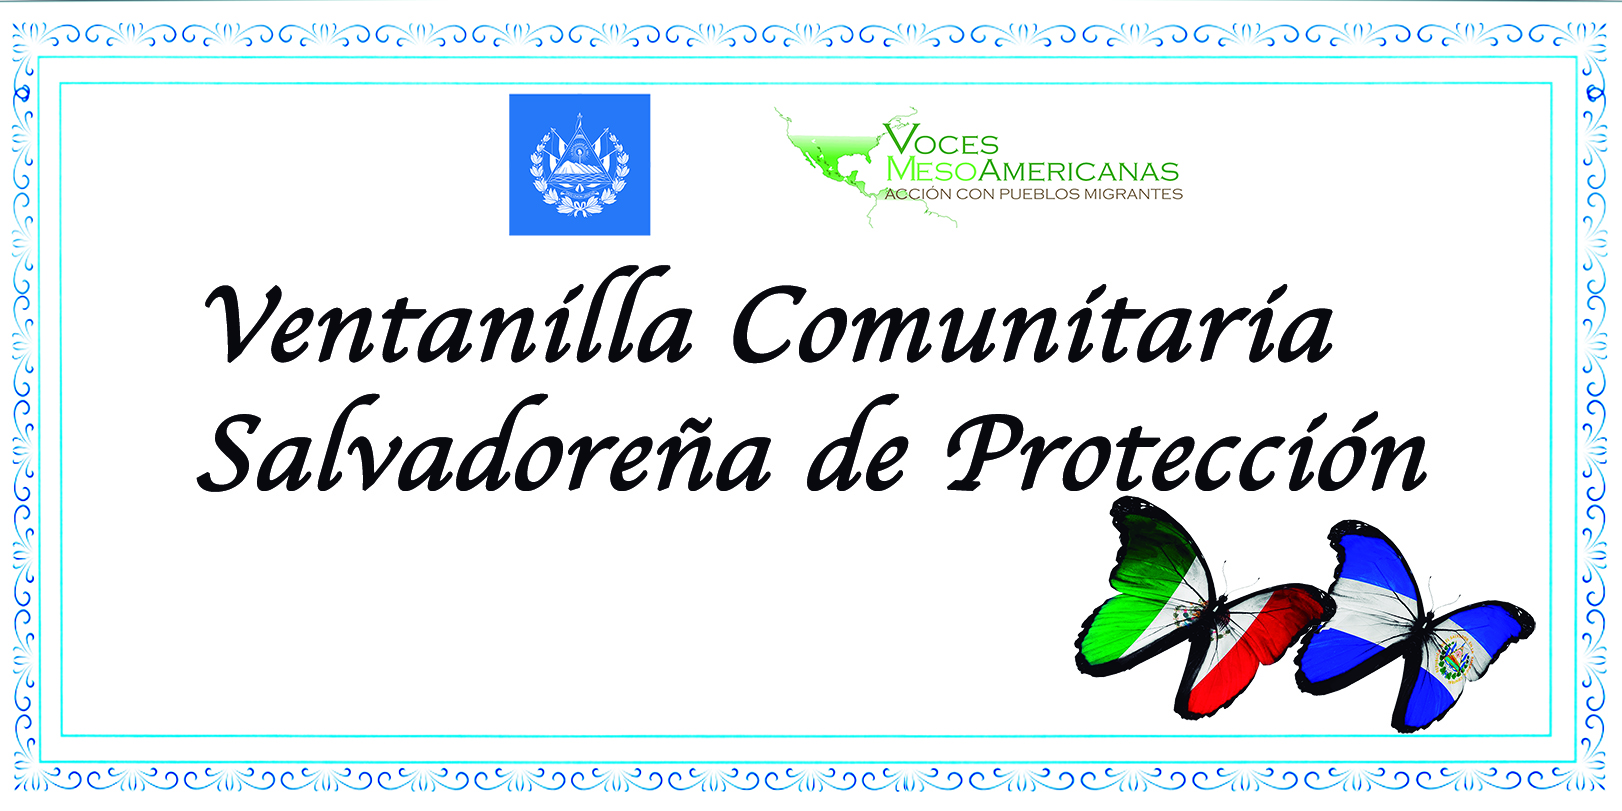 [PRESENTACIÓN PÚBLICA] Voces Mesoamericanas como Ventanilla Comunitaria Salvadoreña de Protección